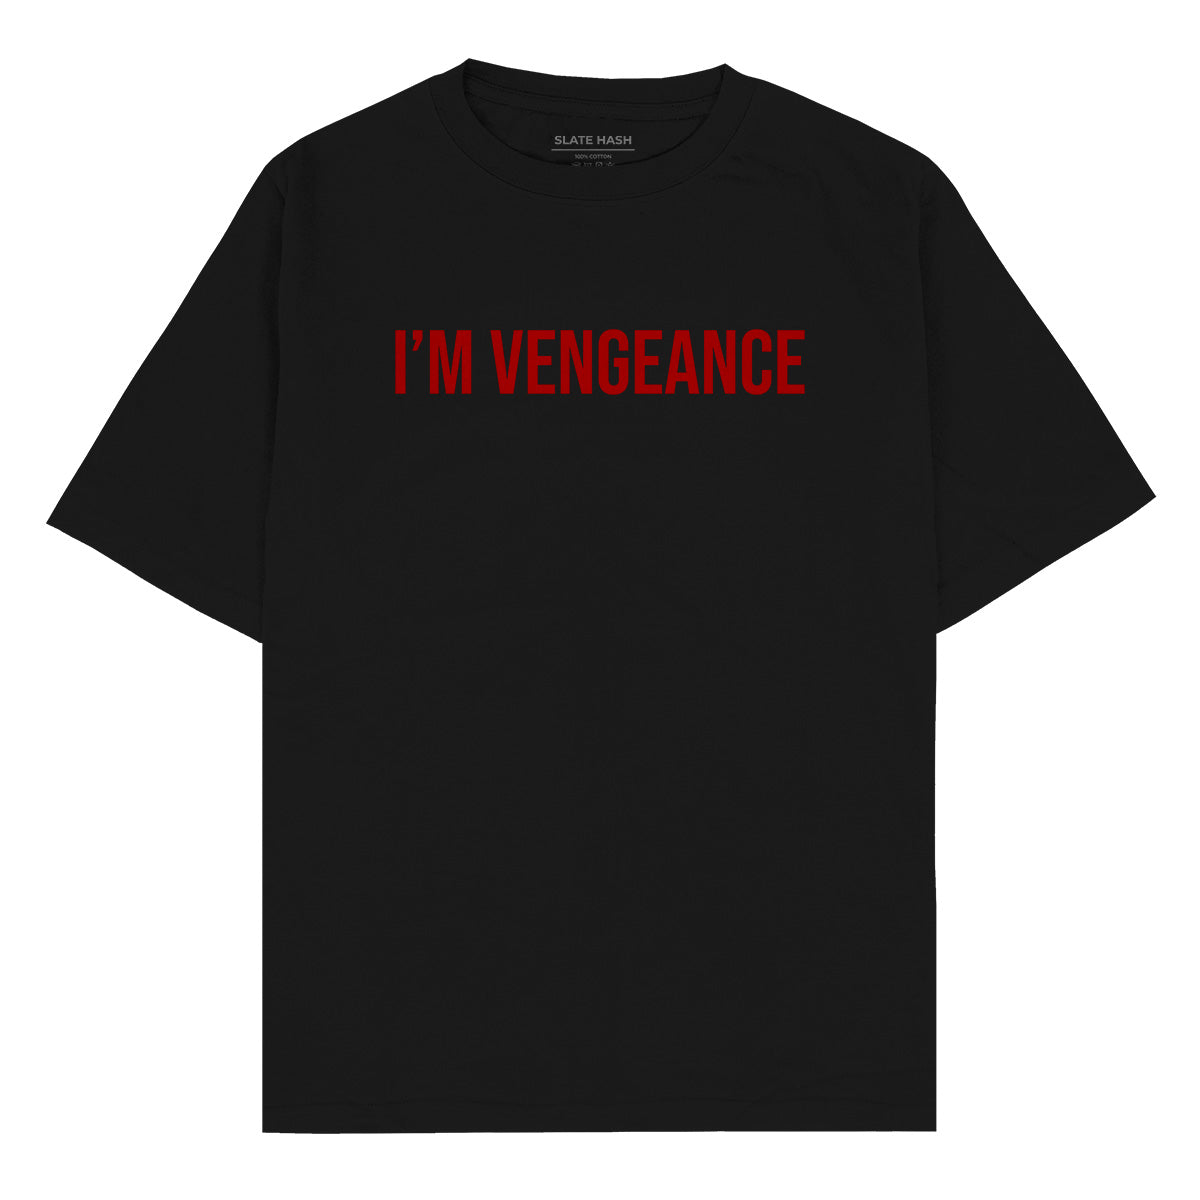 I'm vengeance Oversized T-shirt